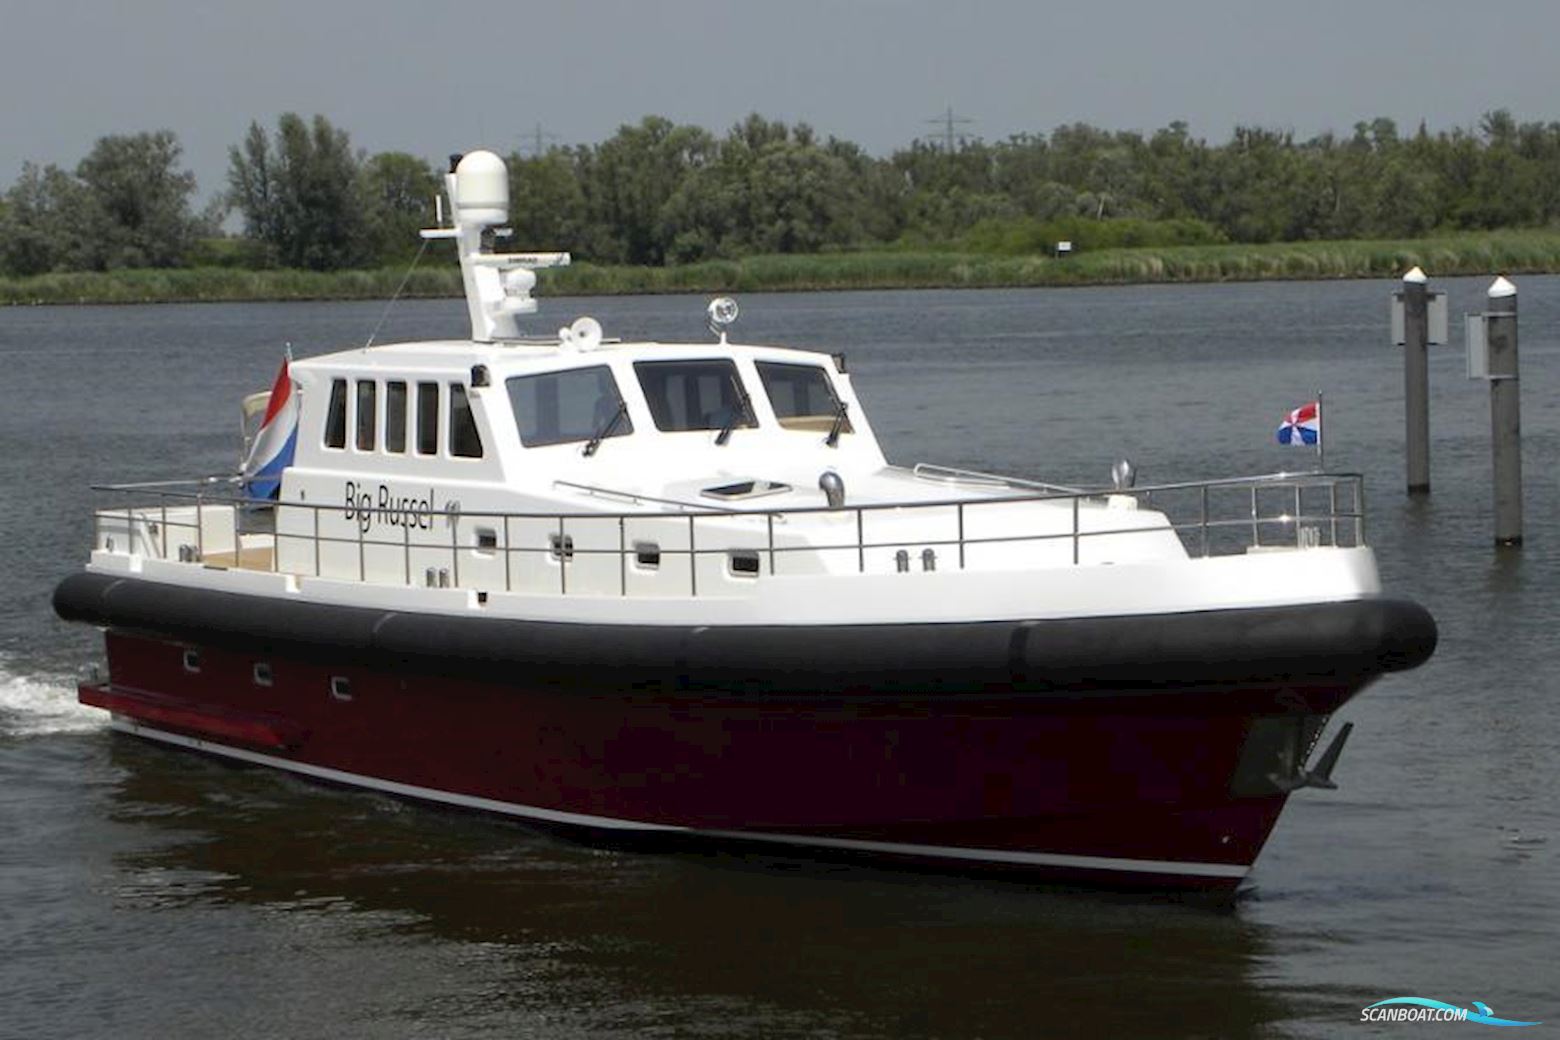 Skilla 2000 Motorbåd 2004, med Yanmar 315 pk. motor, Holland